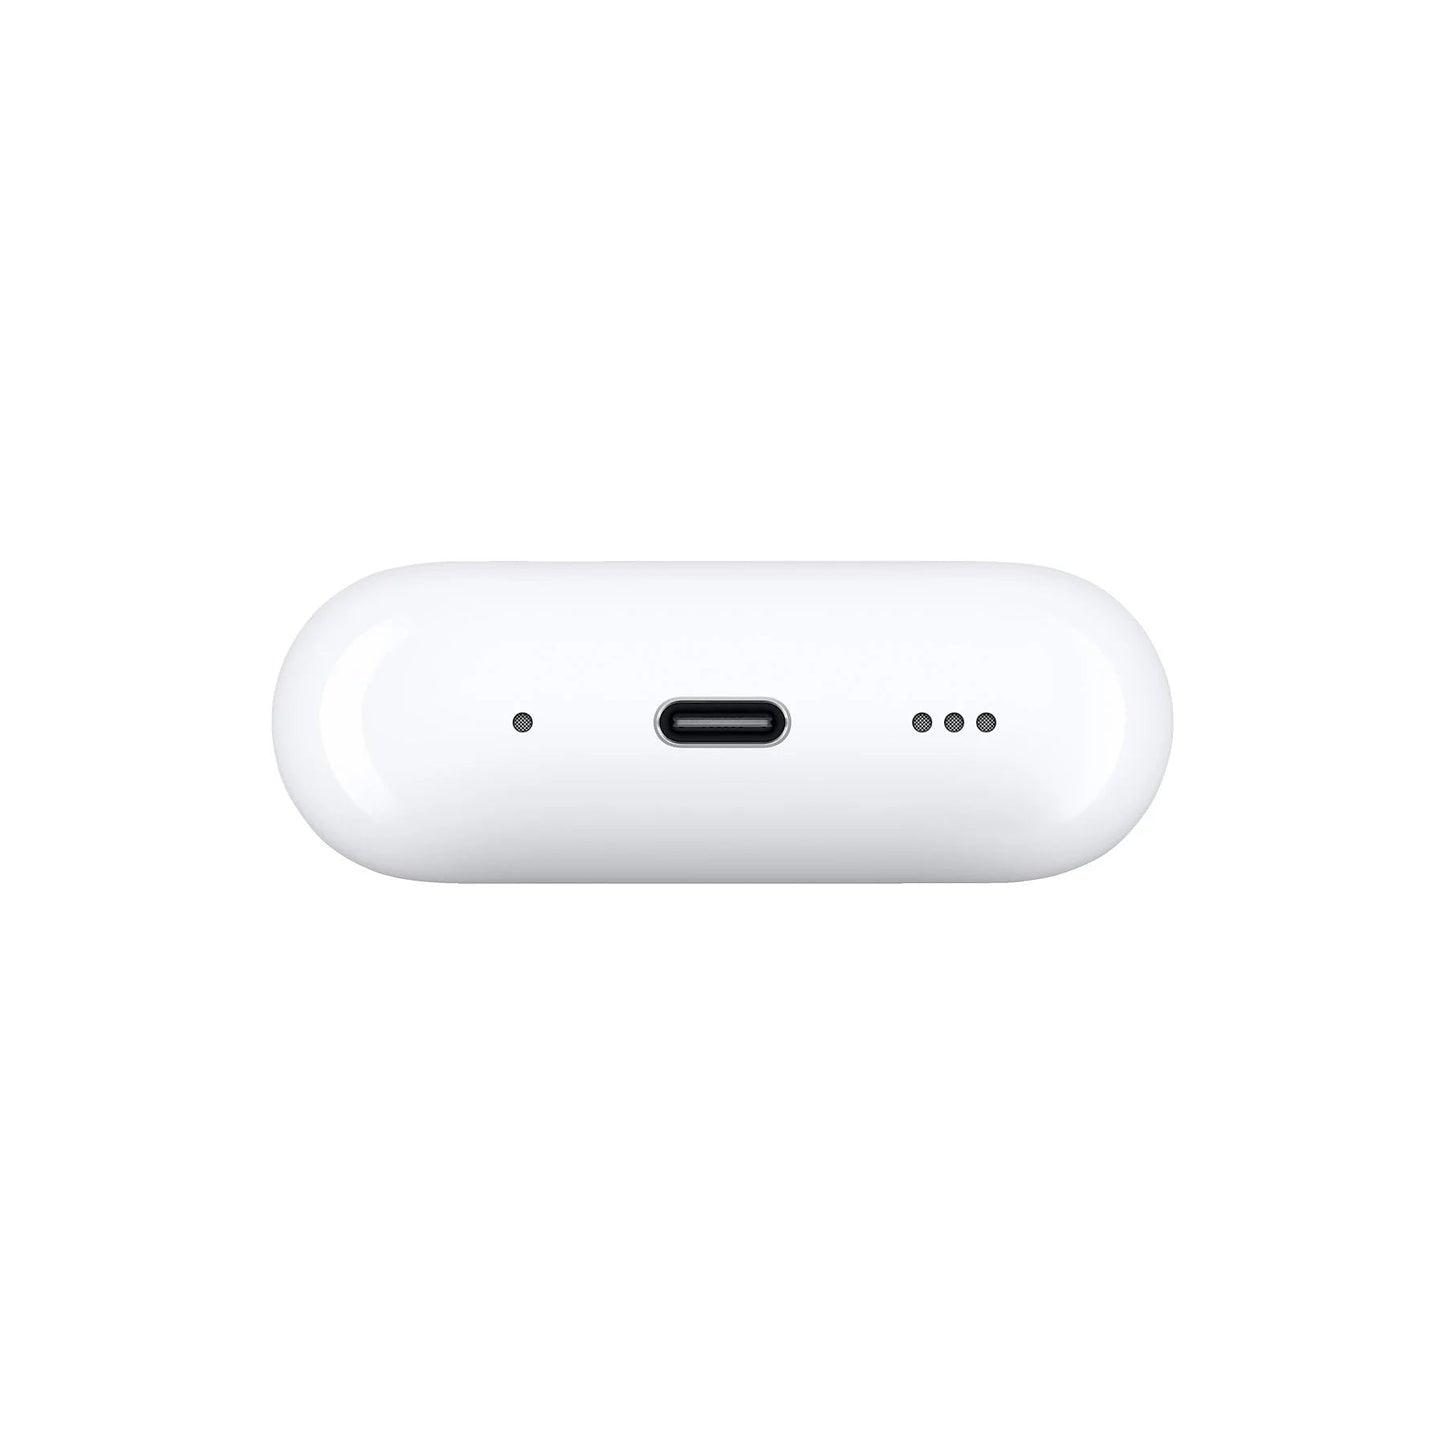 APPLE AirPods Pro (2. Generation) mit MagSafe Case (USB‑C), In-ear Kopfhörer Bluetooth | Lieferung vor Weihnachten - Instock Germany